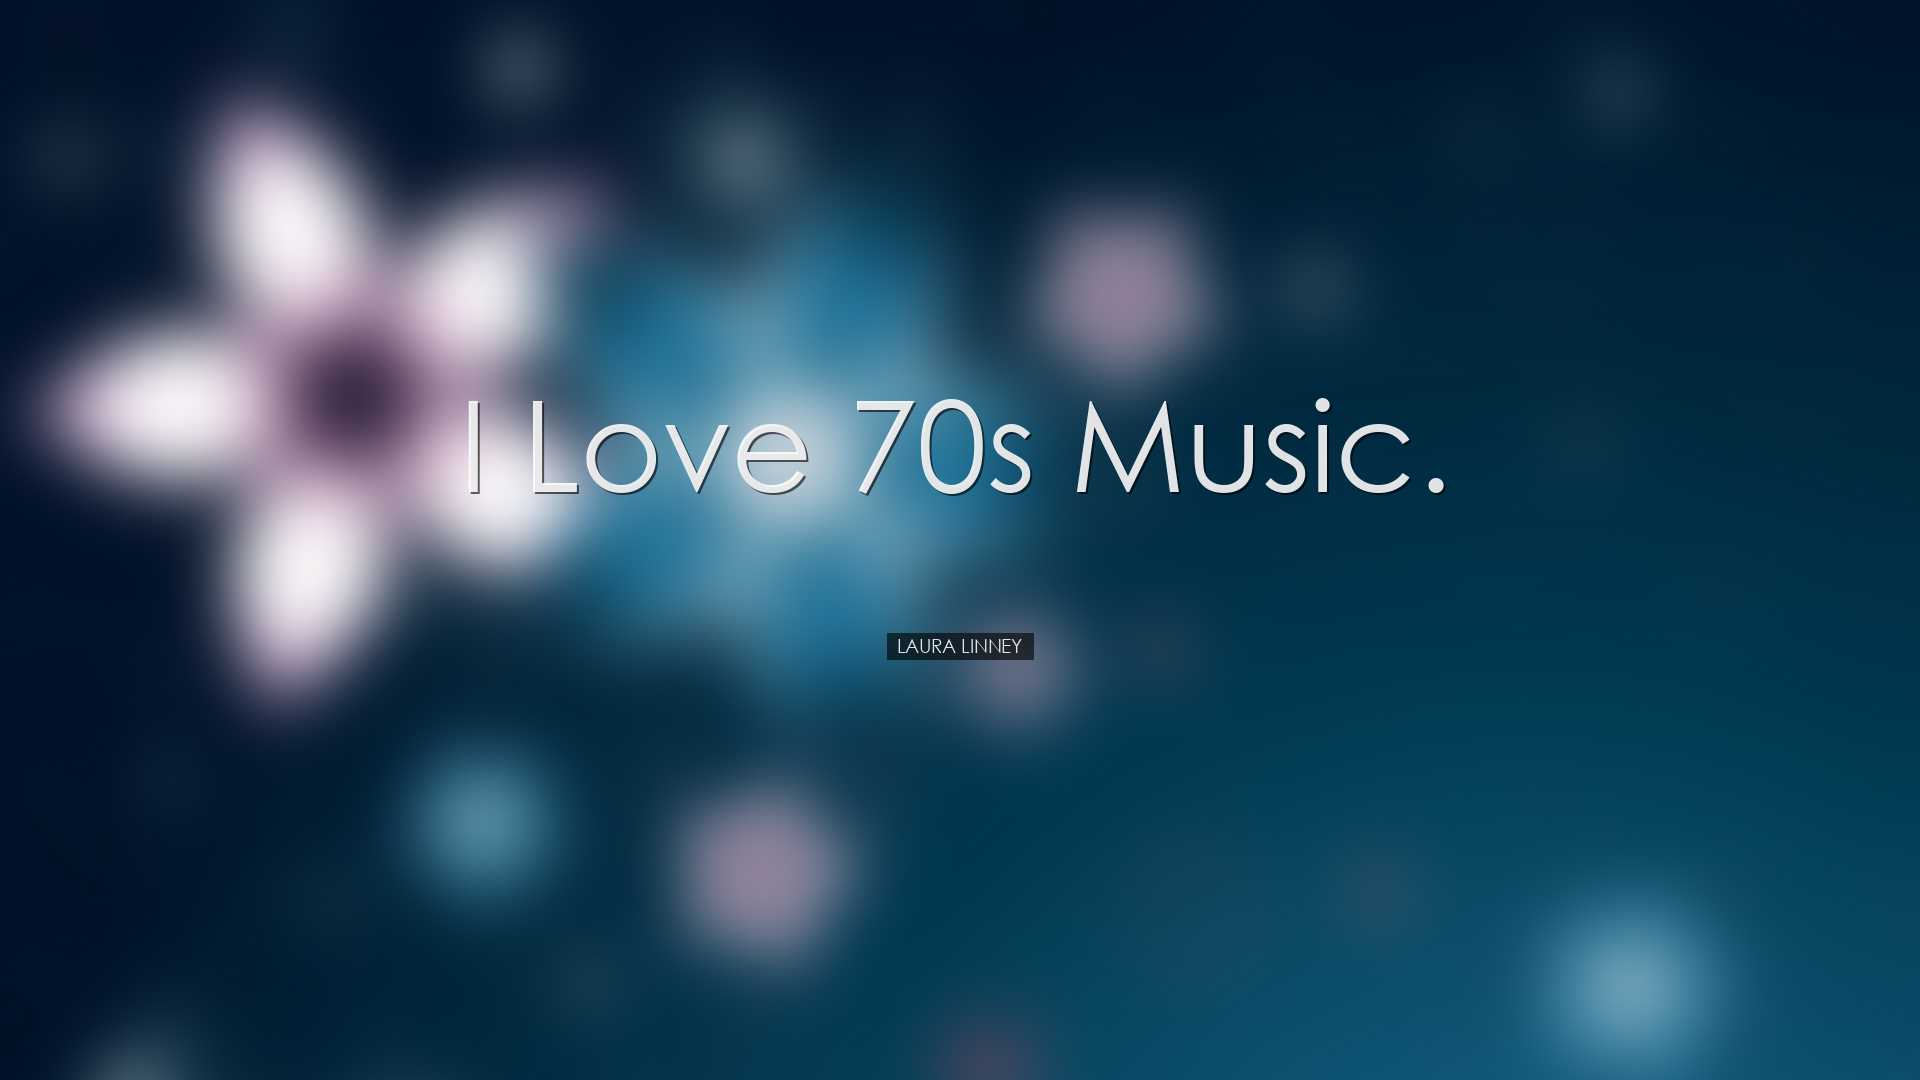 I love 70s music. - Laura Linney